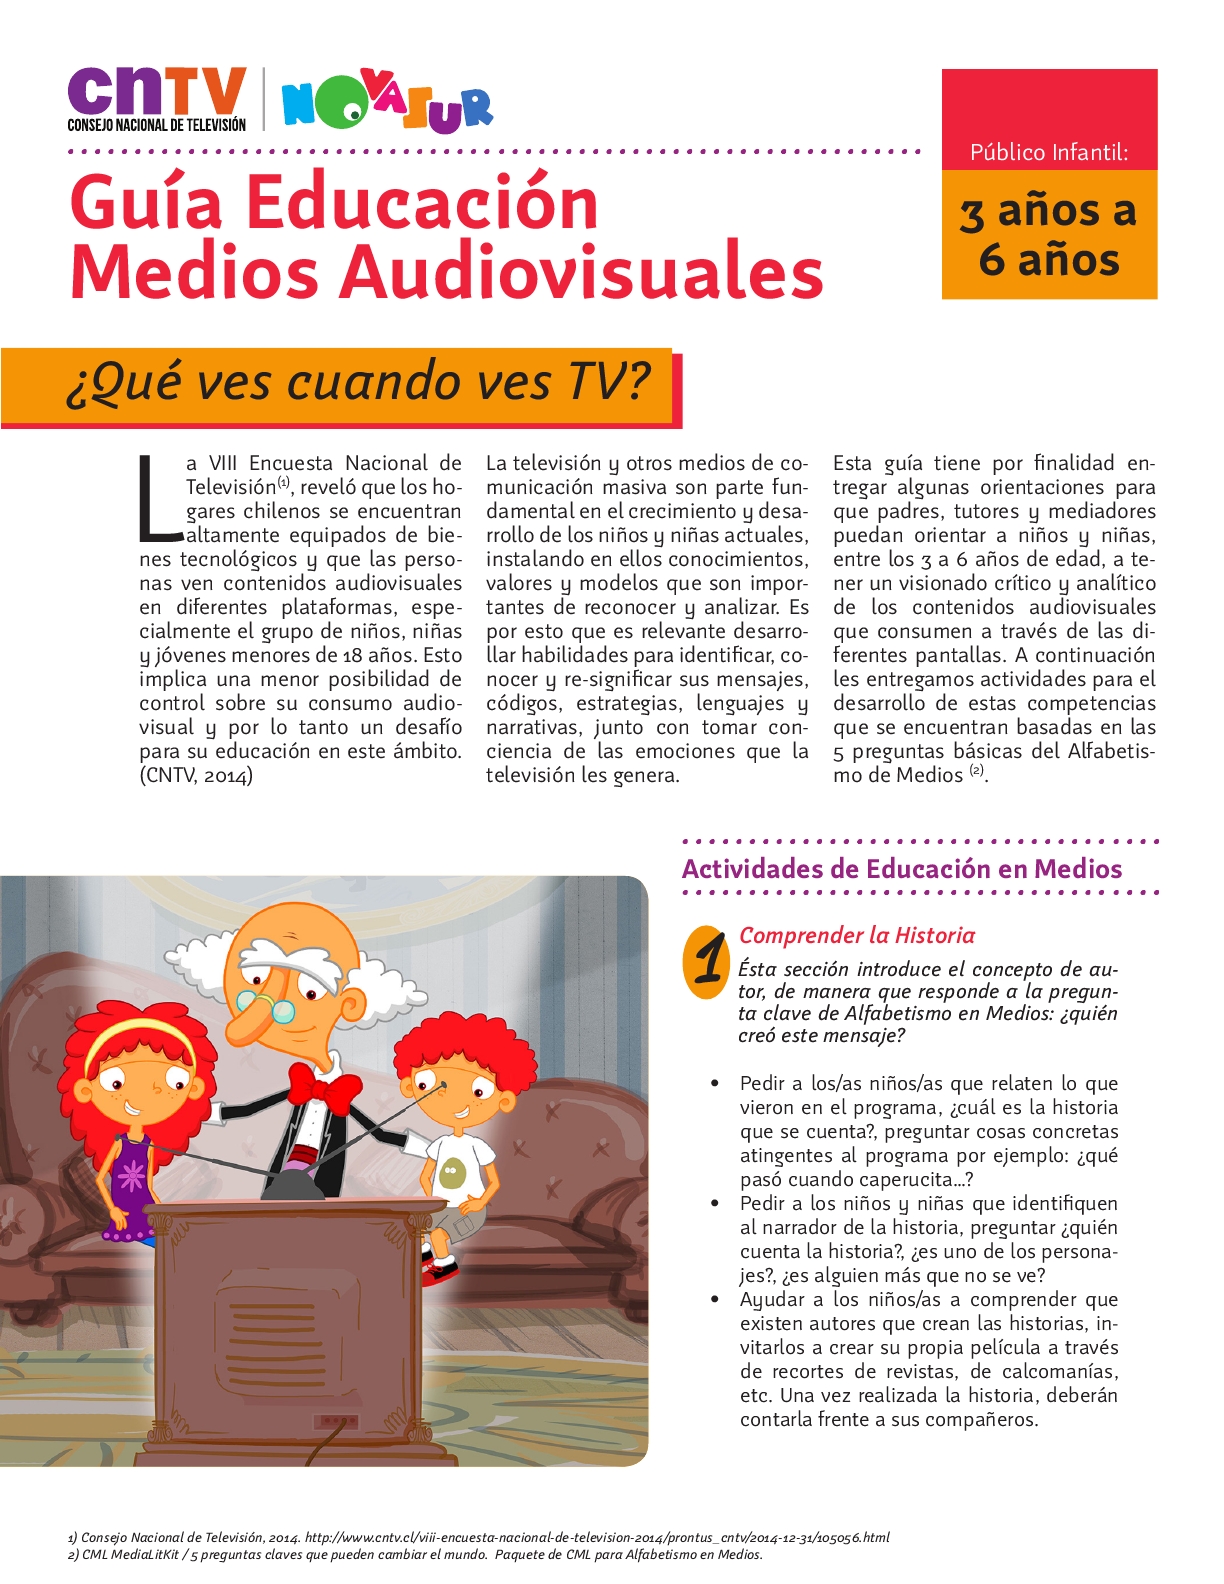 Guía Educación en Medios Audiovisuales para público infantil de 3 a 6 años